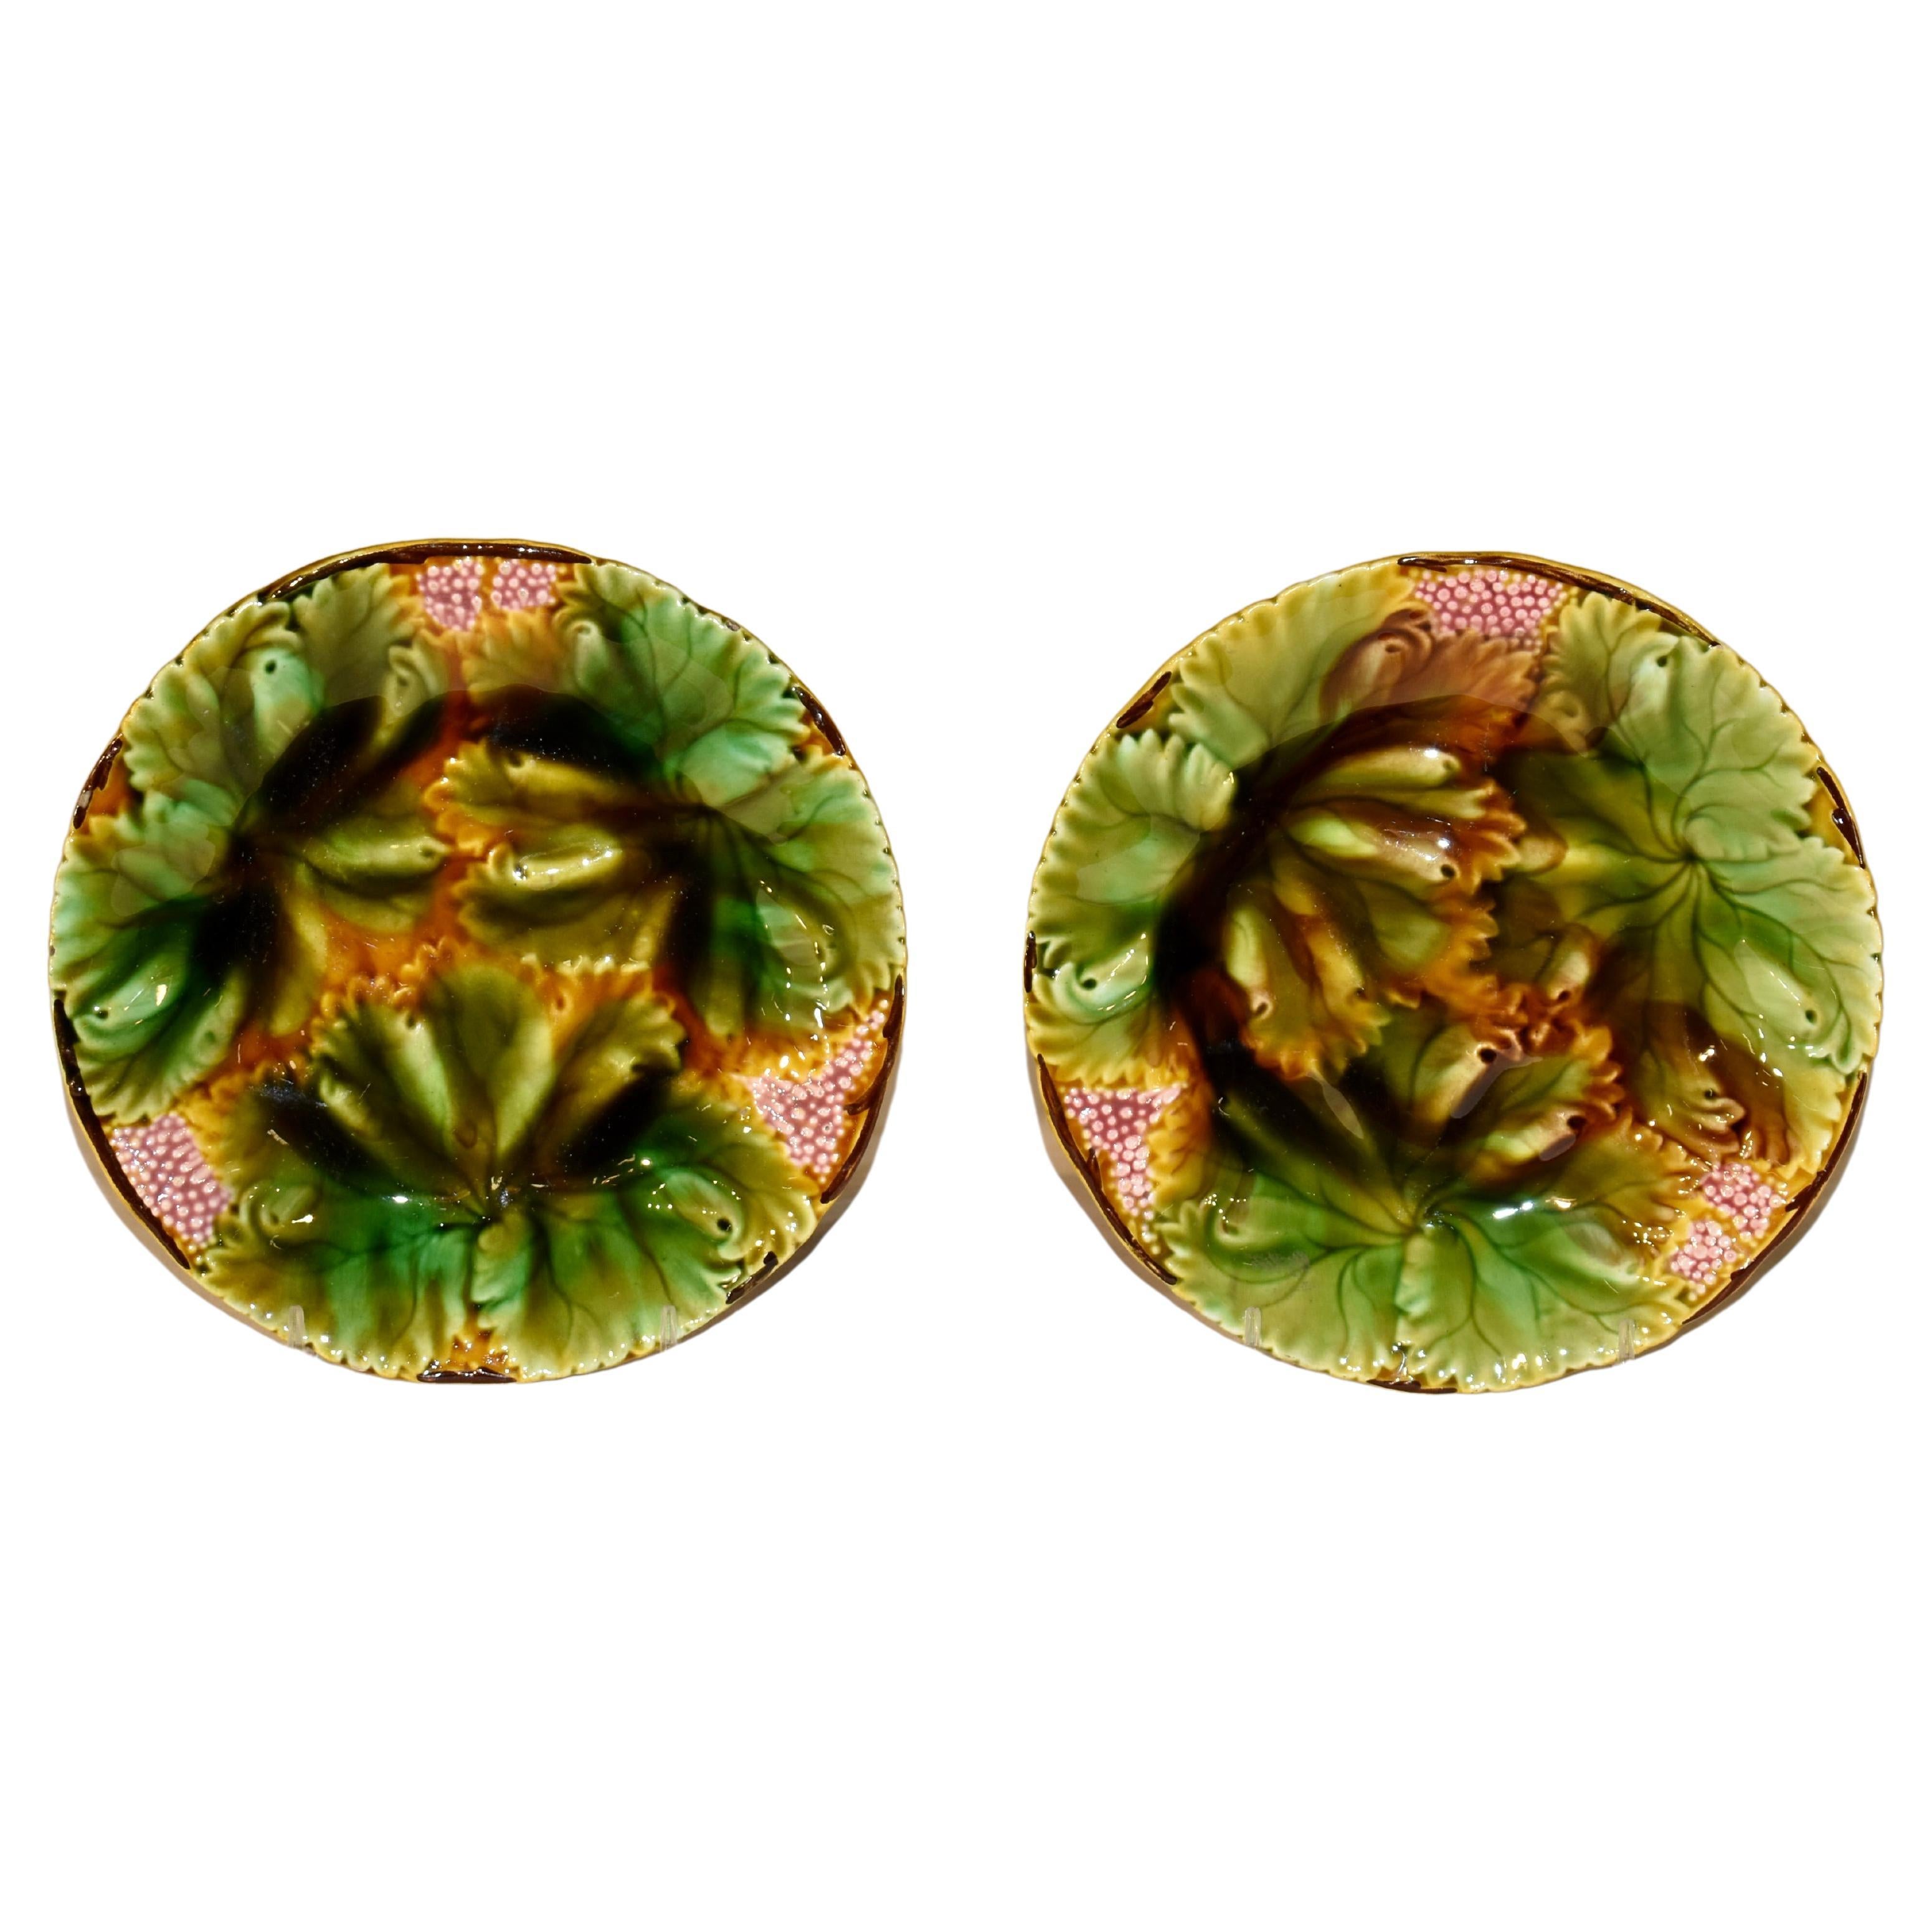 Ein Paar Villeroy- und Boch-Majolika-Teller aus dem 19. Jahrhundert